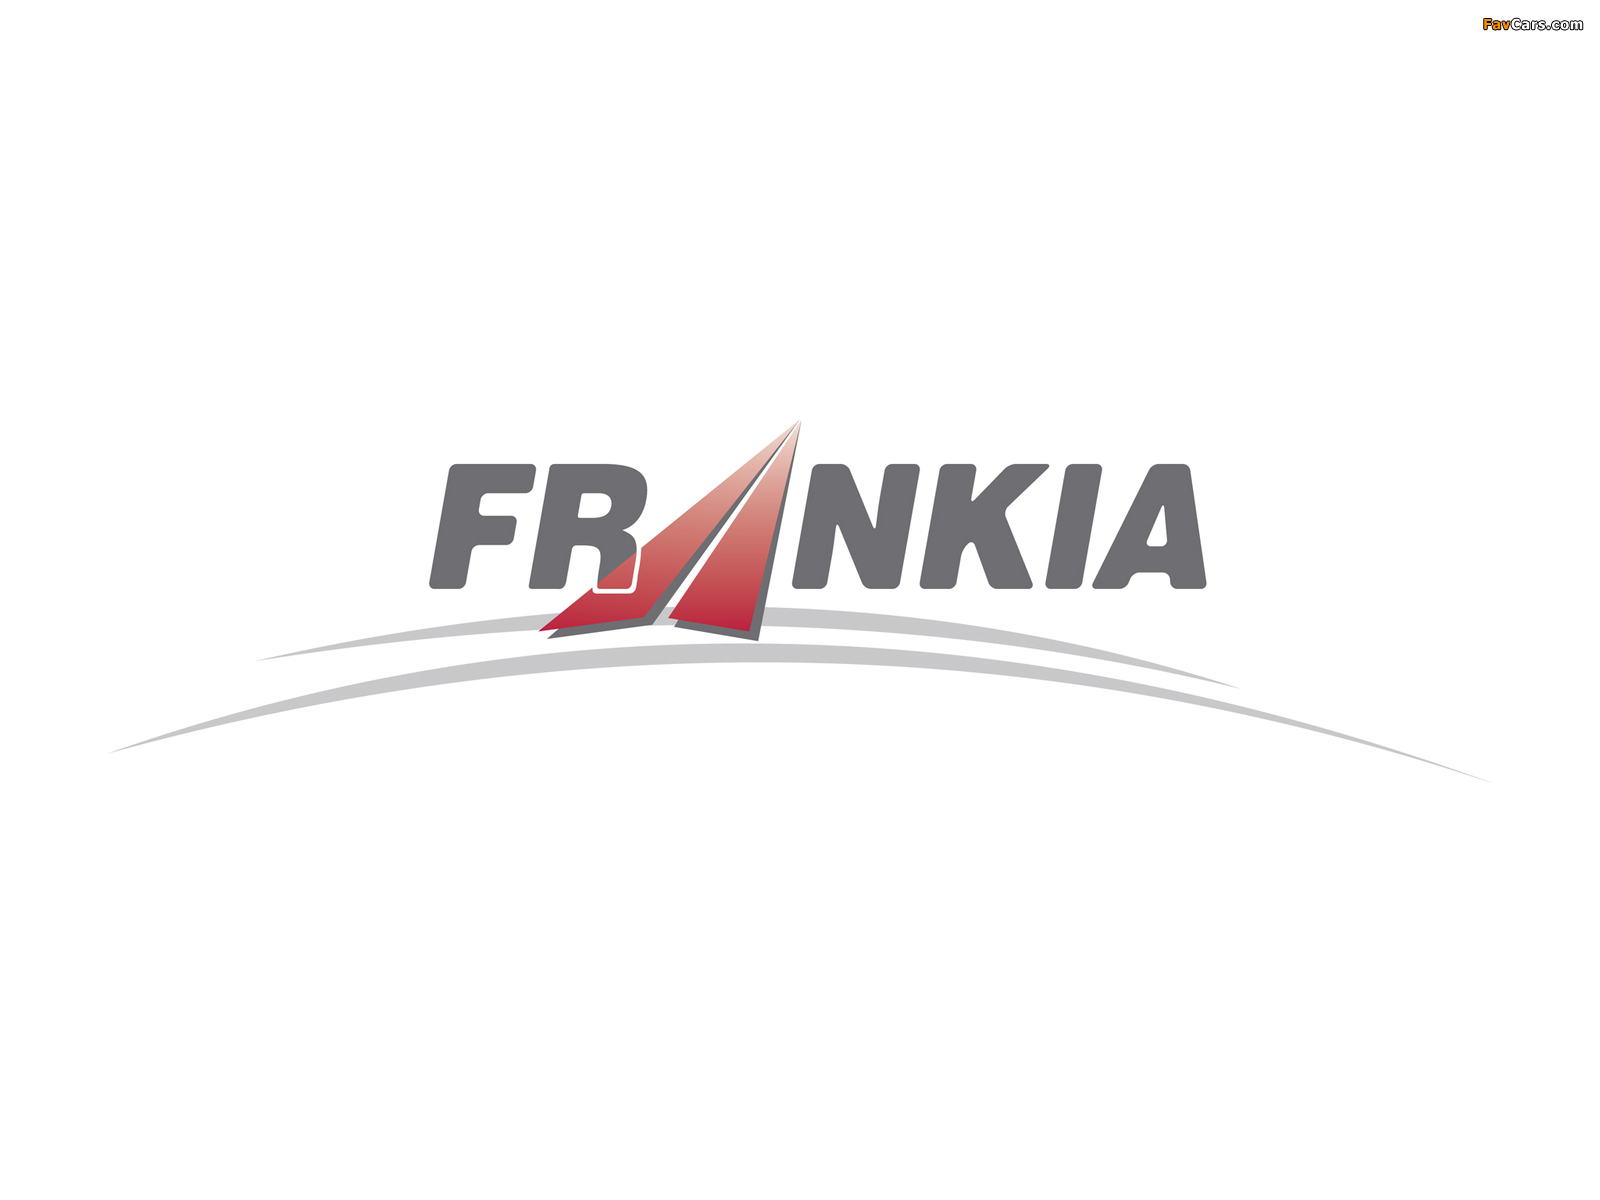 Frankia pictures (1600 x 1200)